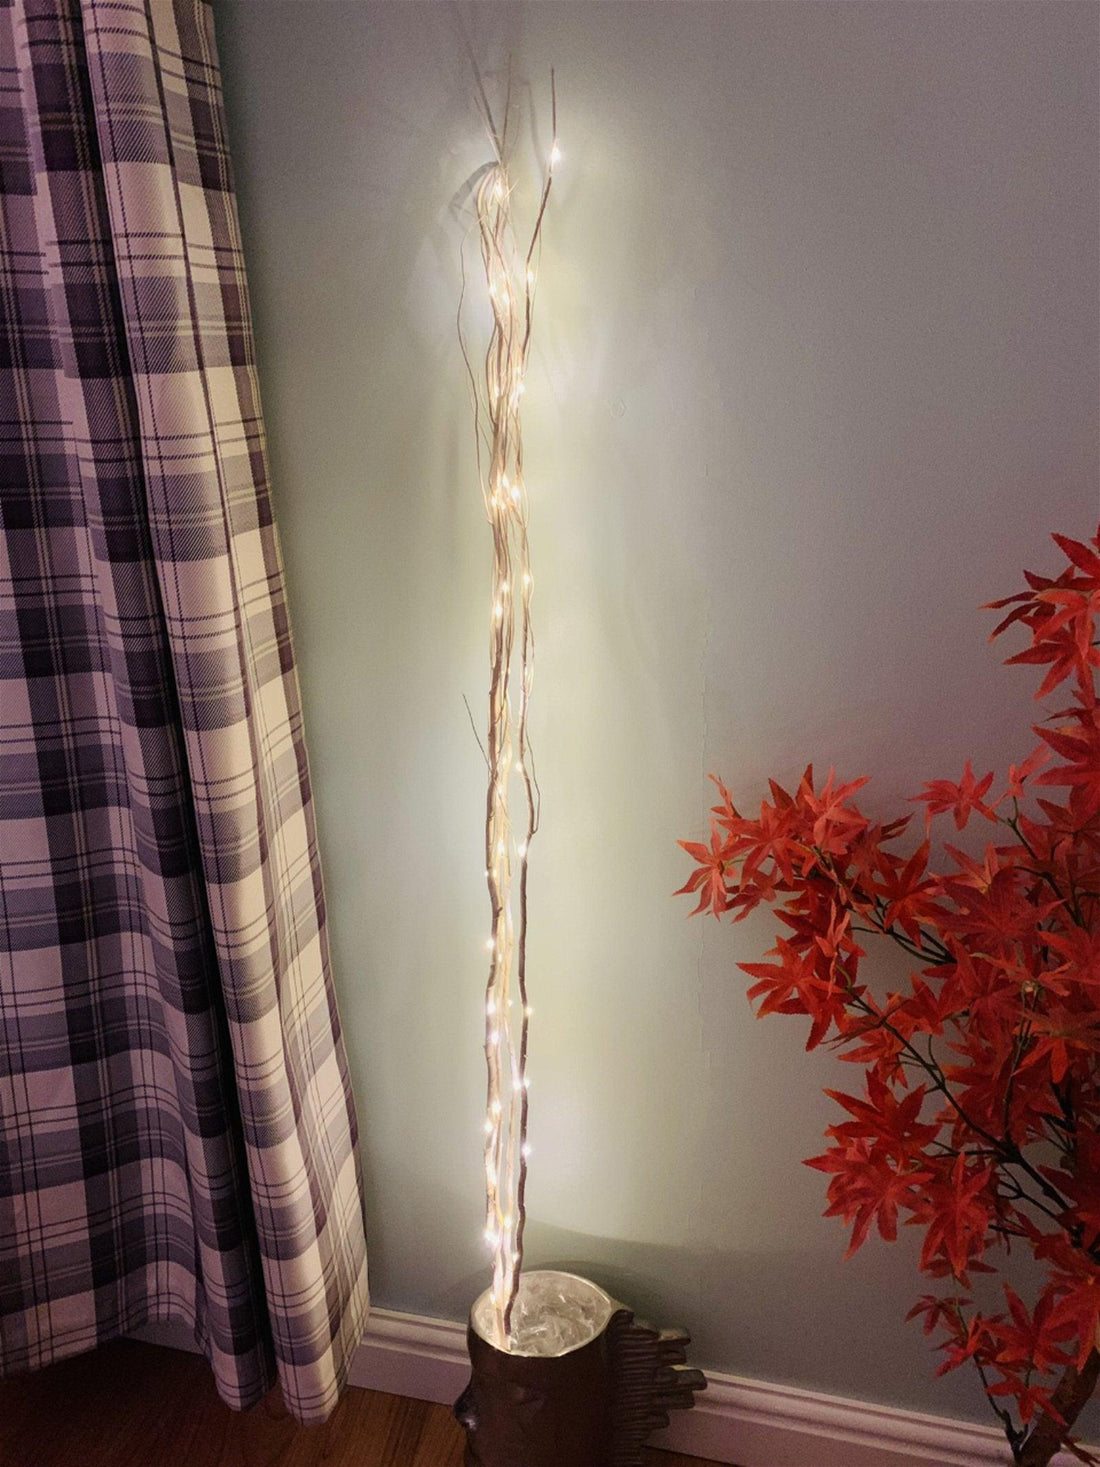 LED Lights on 4 White Branches - £27.99 - LED Lighting 